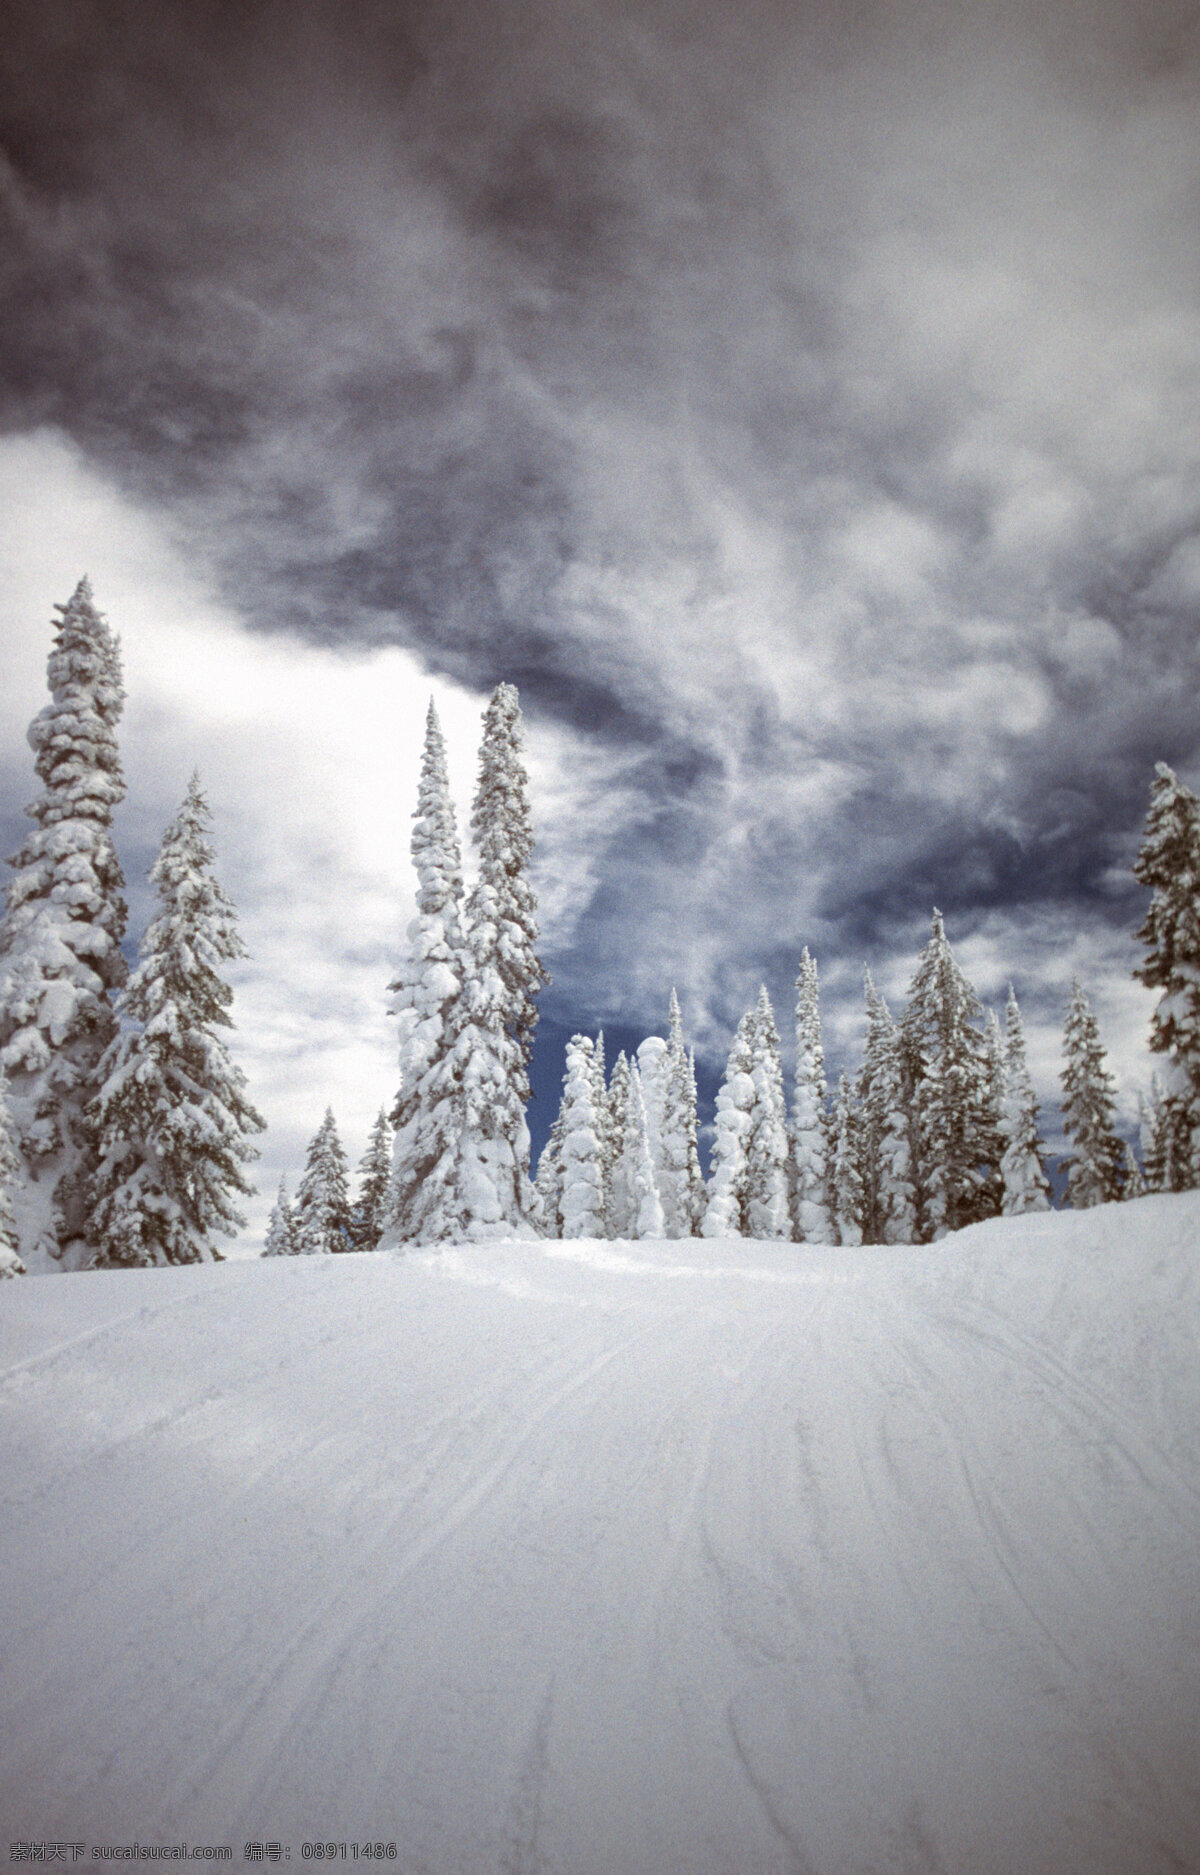 自然雪景摄影 高清图片 jpg图库 摄影图片 自然景观 自然风光 森林 自然风景 风景图片 旅游胜地 旅游风光 树林 雪景 雪地 雪 积雪 冬天景象 雪景摄影图片 灰色